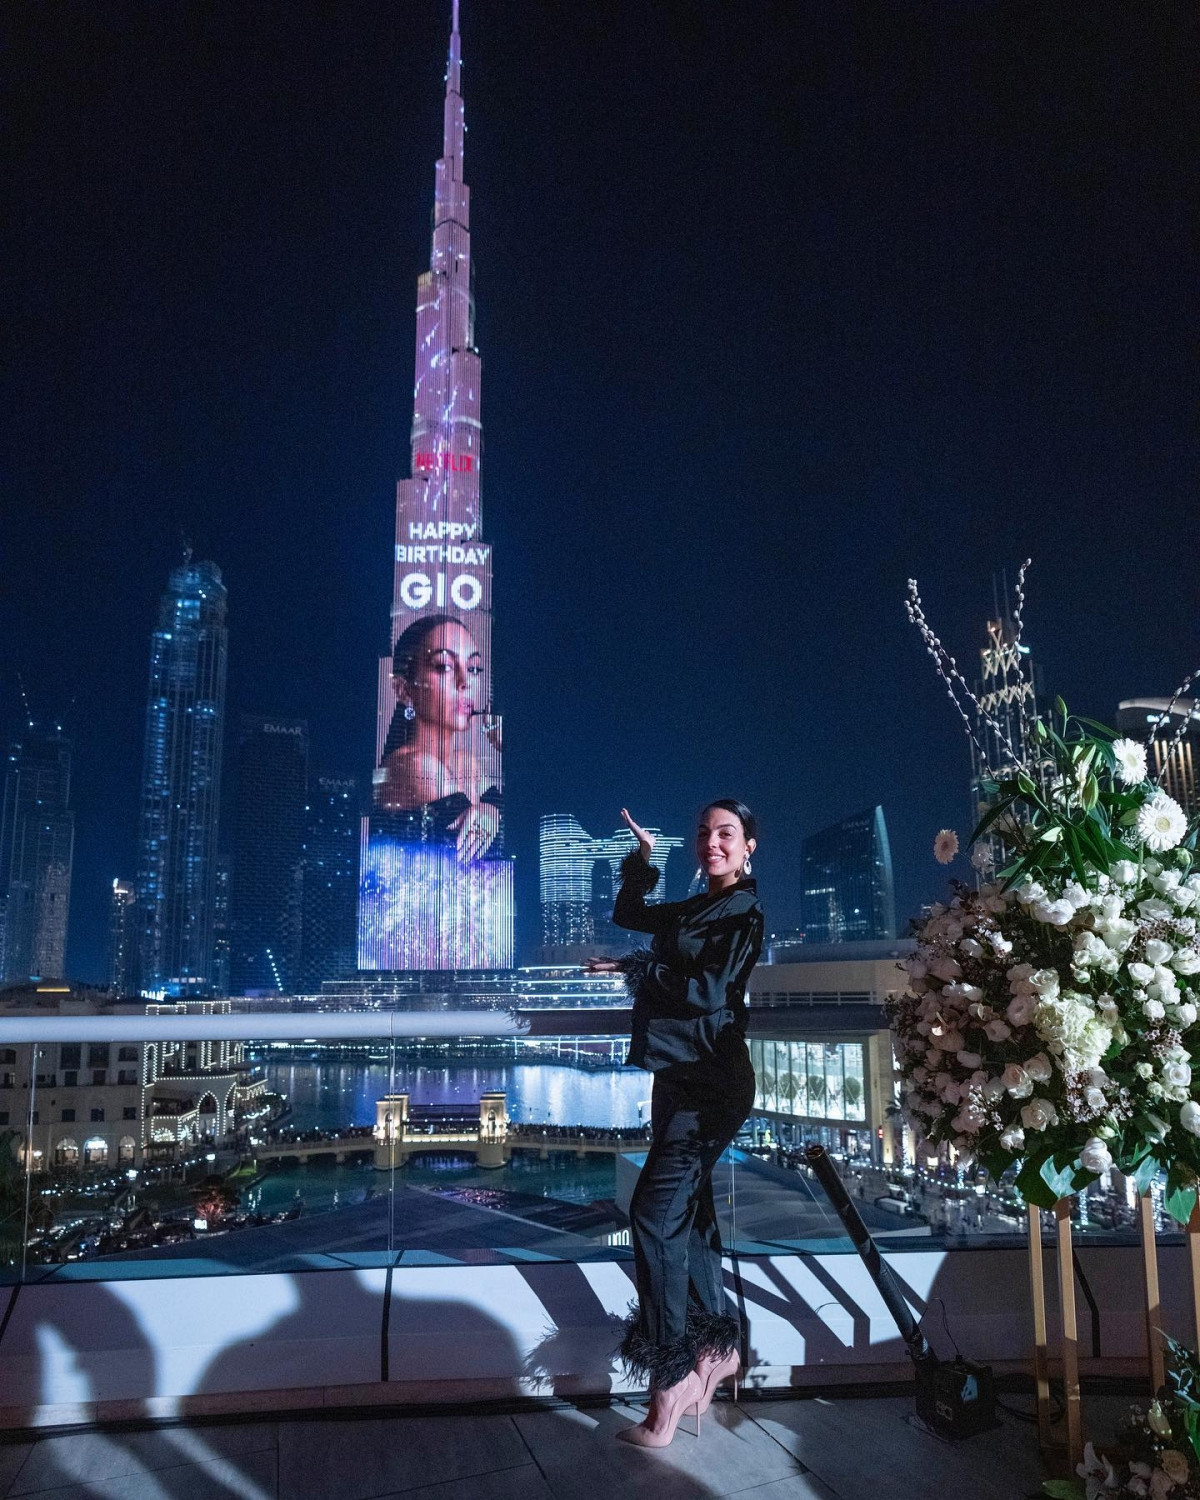 CR7 đã thuê mặt tiền tòa tháp Burj Khalifa ở Dubai để trình chiếu đoạn video chúc mừng sinh nhật bạn gái, bắt đầu với hình ảnh Georgina Rodriguez và kết thúc với dòng chữ 